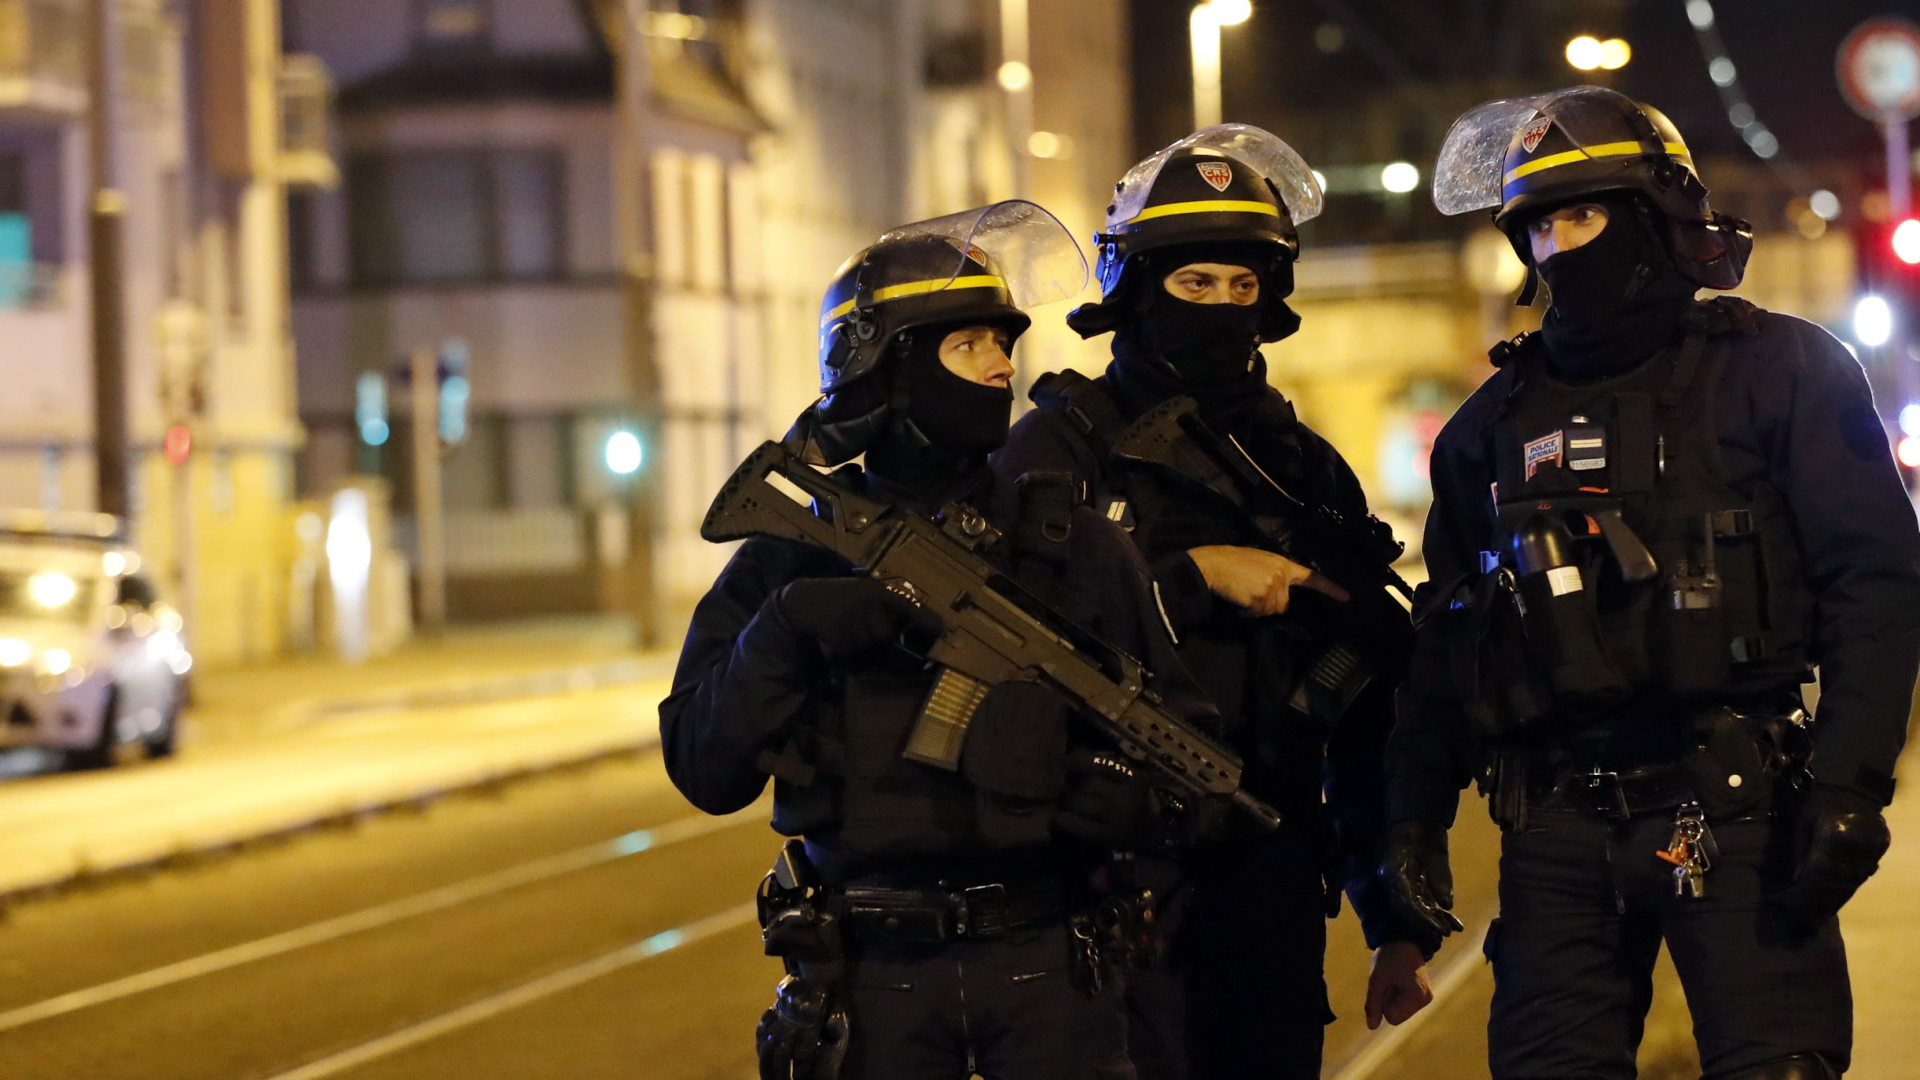 Polizisten am Ort des Schusswechsels in Straßburg | Bildquelle: dpa